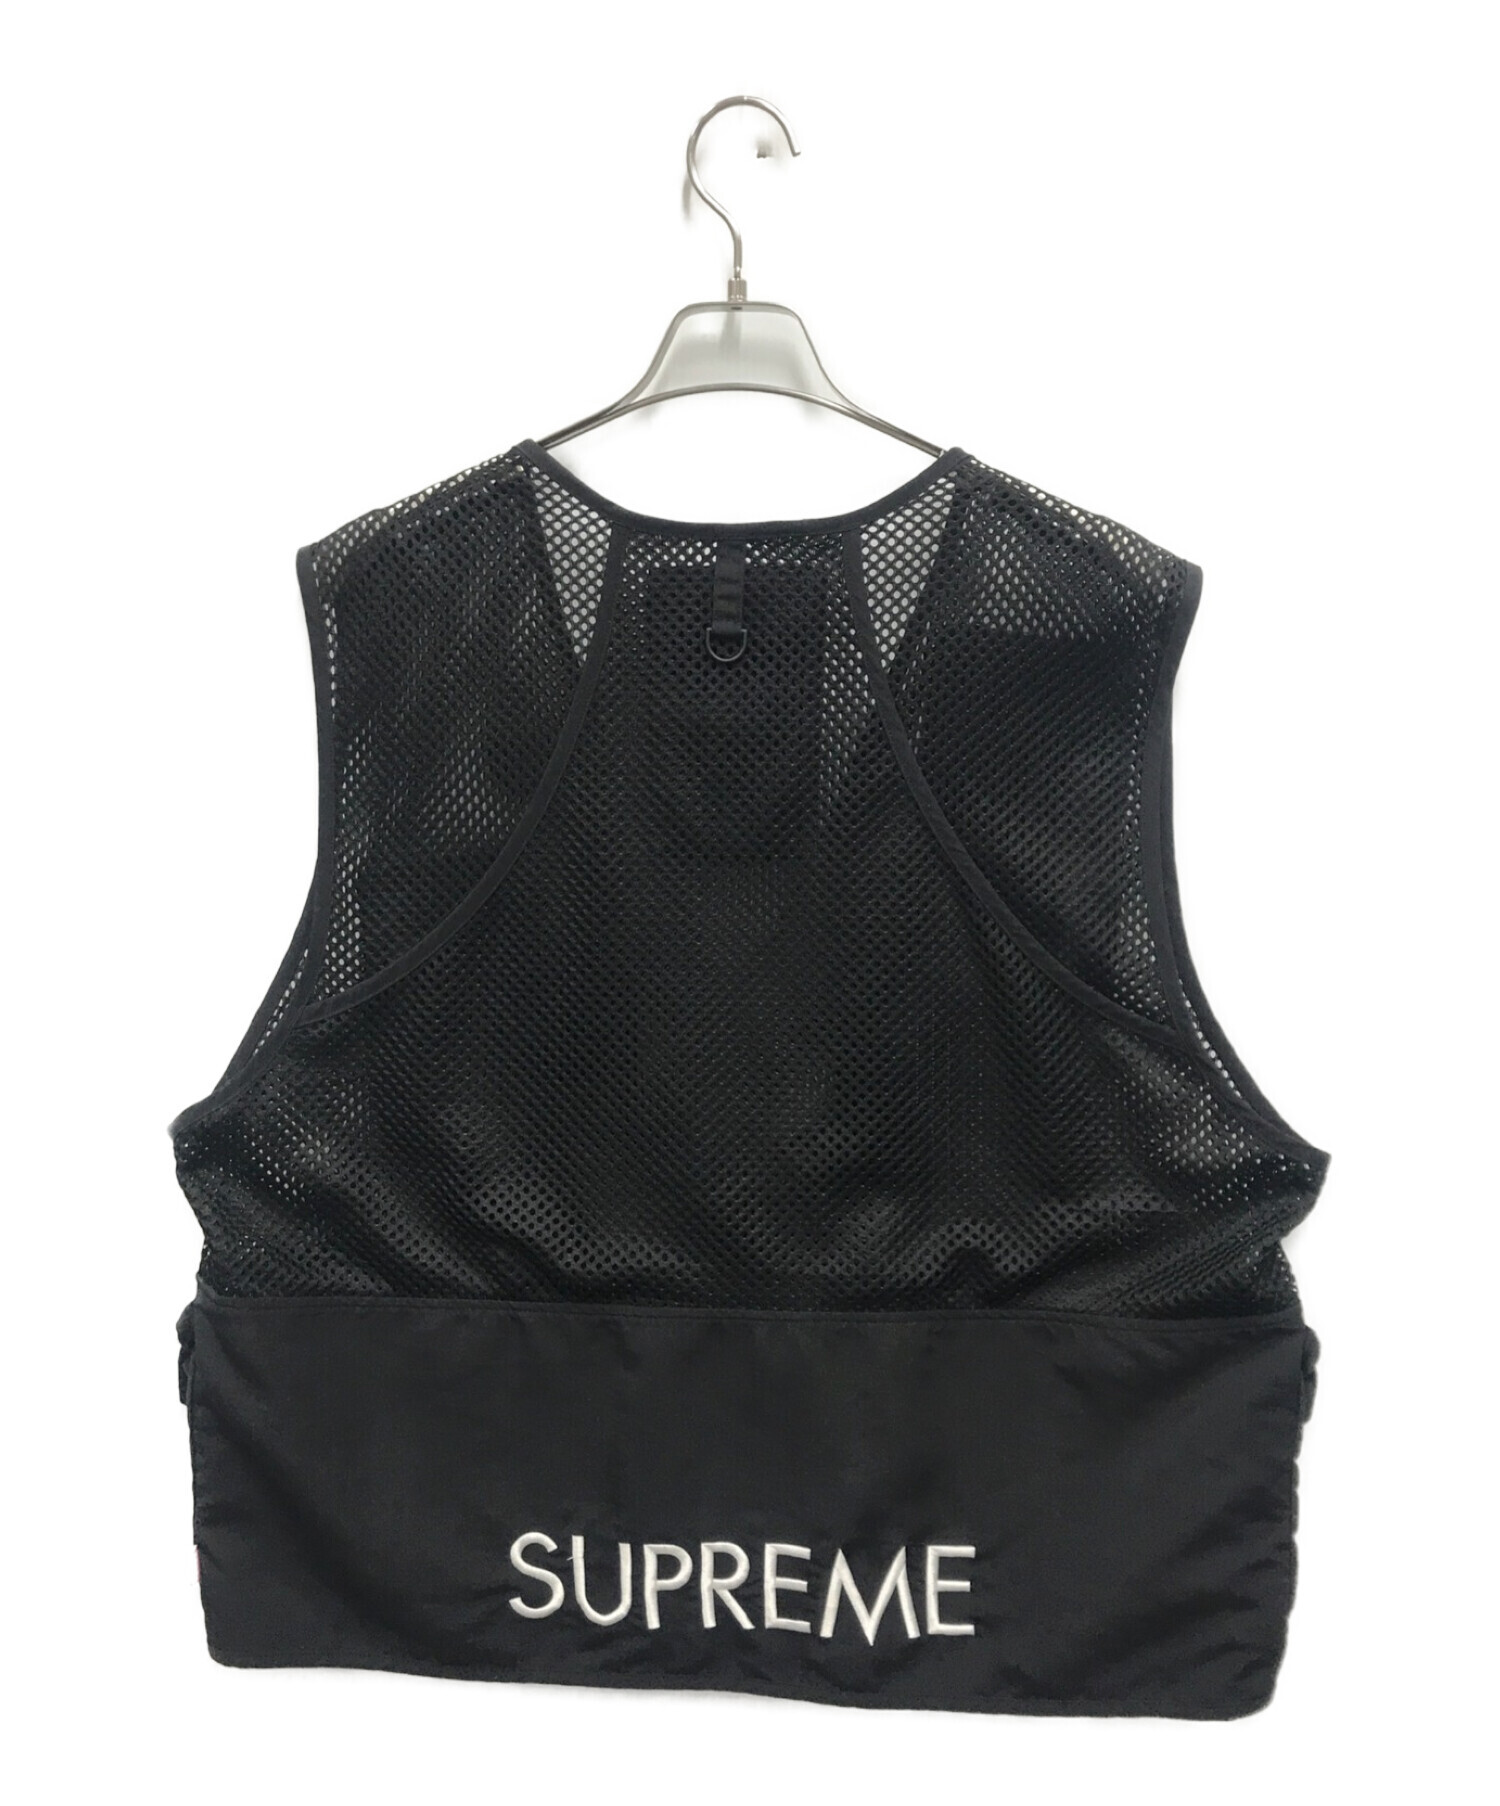 Supreme (シュプリーム) THE NORTH FACE (ザ ノース フェイス) Cargo Vest ブラック サイズ:XL